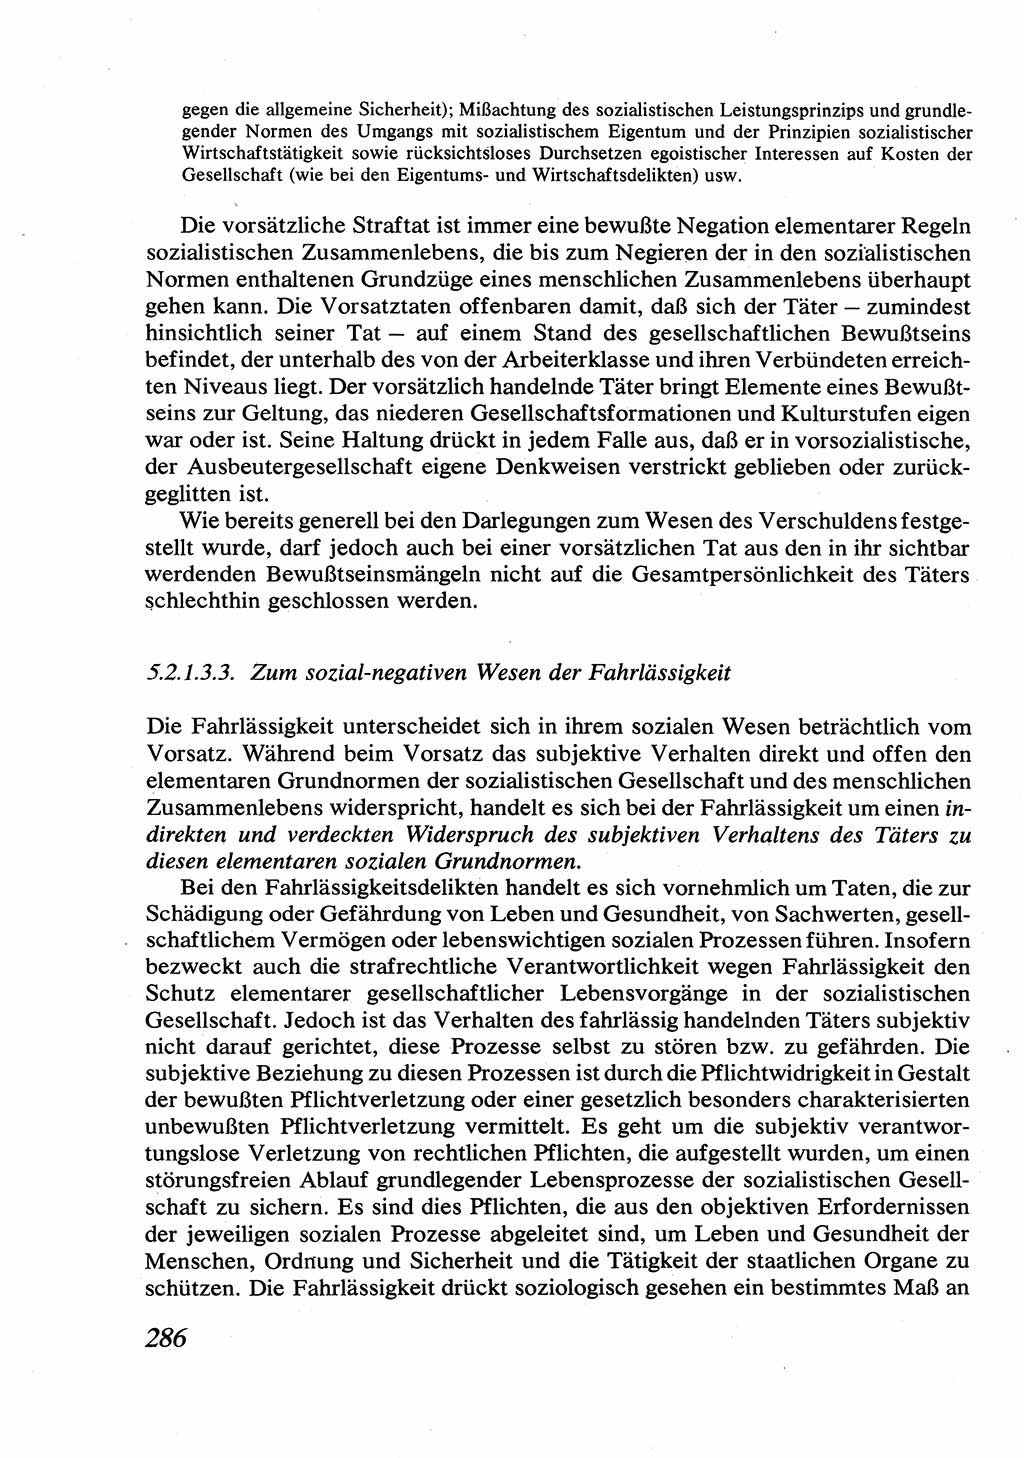 Strafrecht [Deutsche Demokratische Republik (DDR)], Allgemeiner Teil, Lehrbuch 1976, Seite 286 (Strafr. DDR AT Lb. 1976, S. 286)